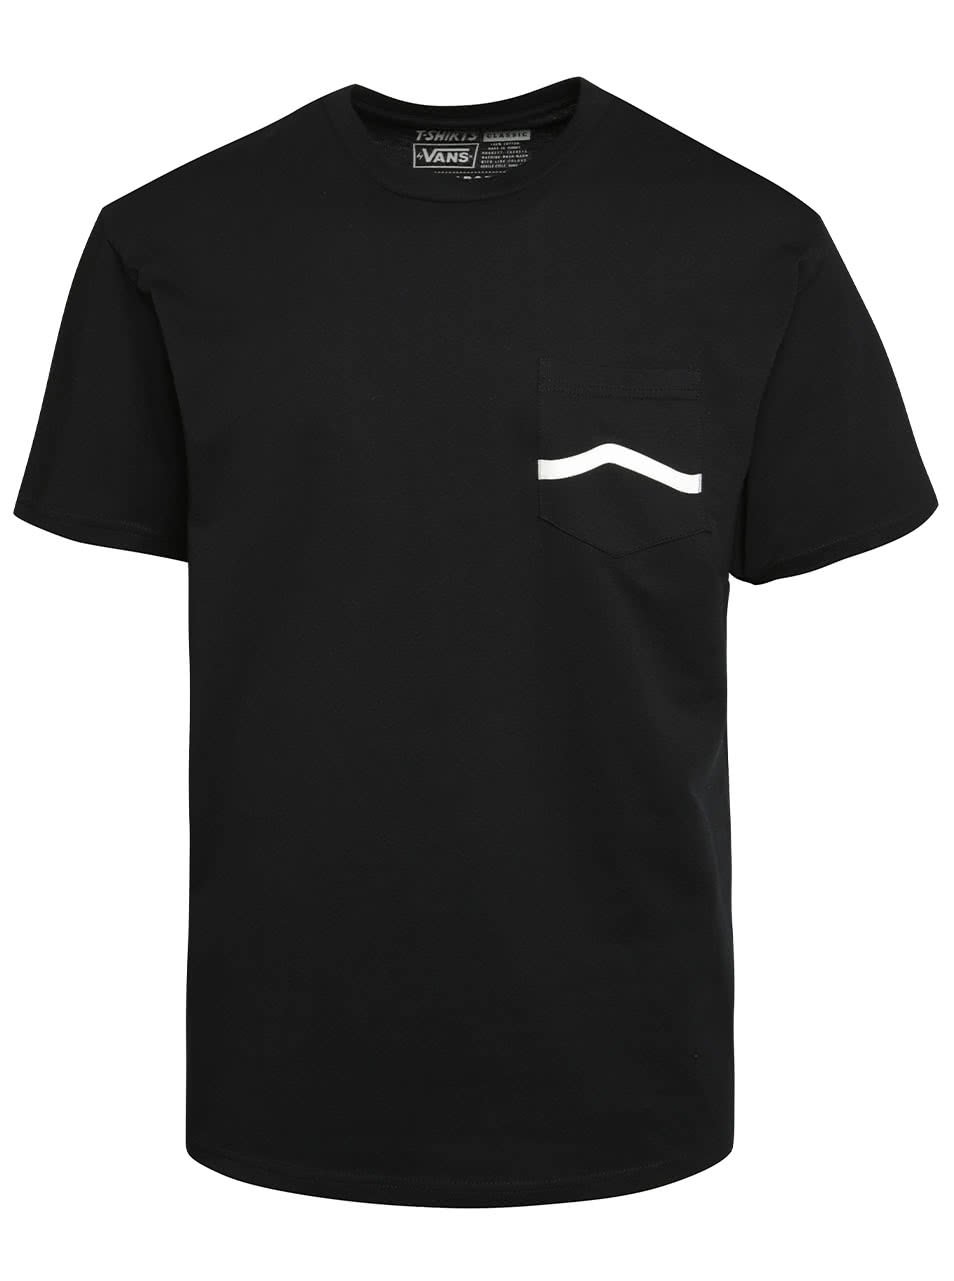 Černé pánské triko s náprsní kapsou Vans Side Stripe